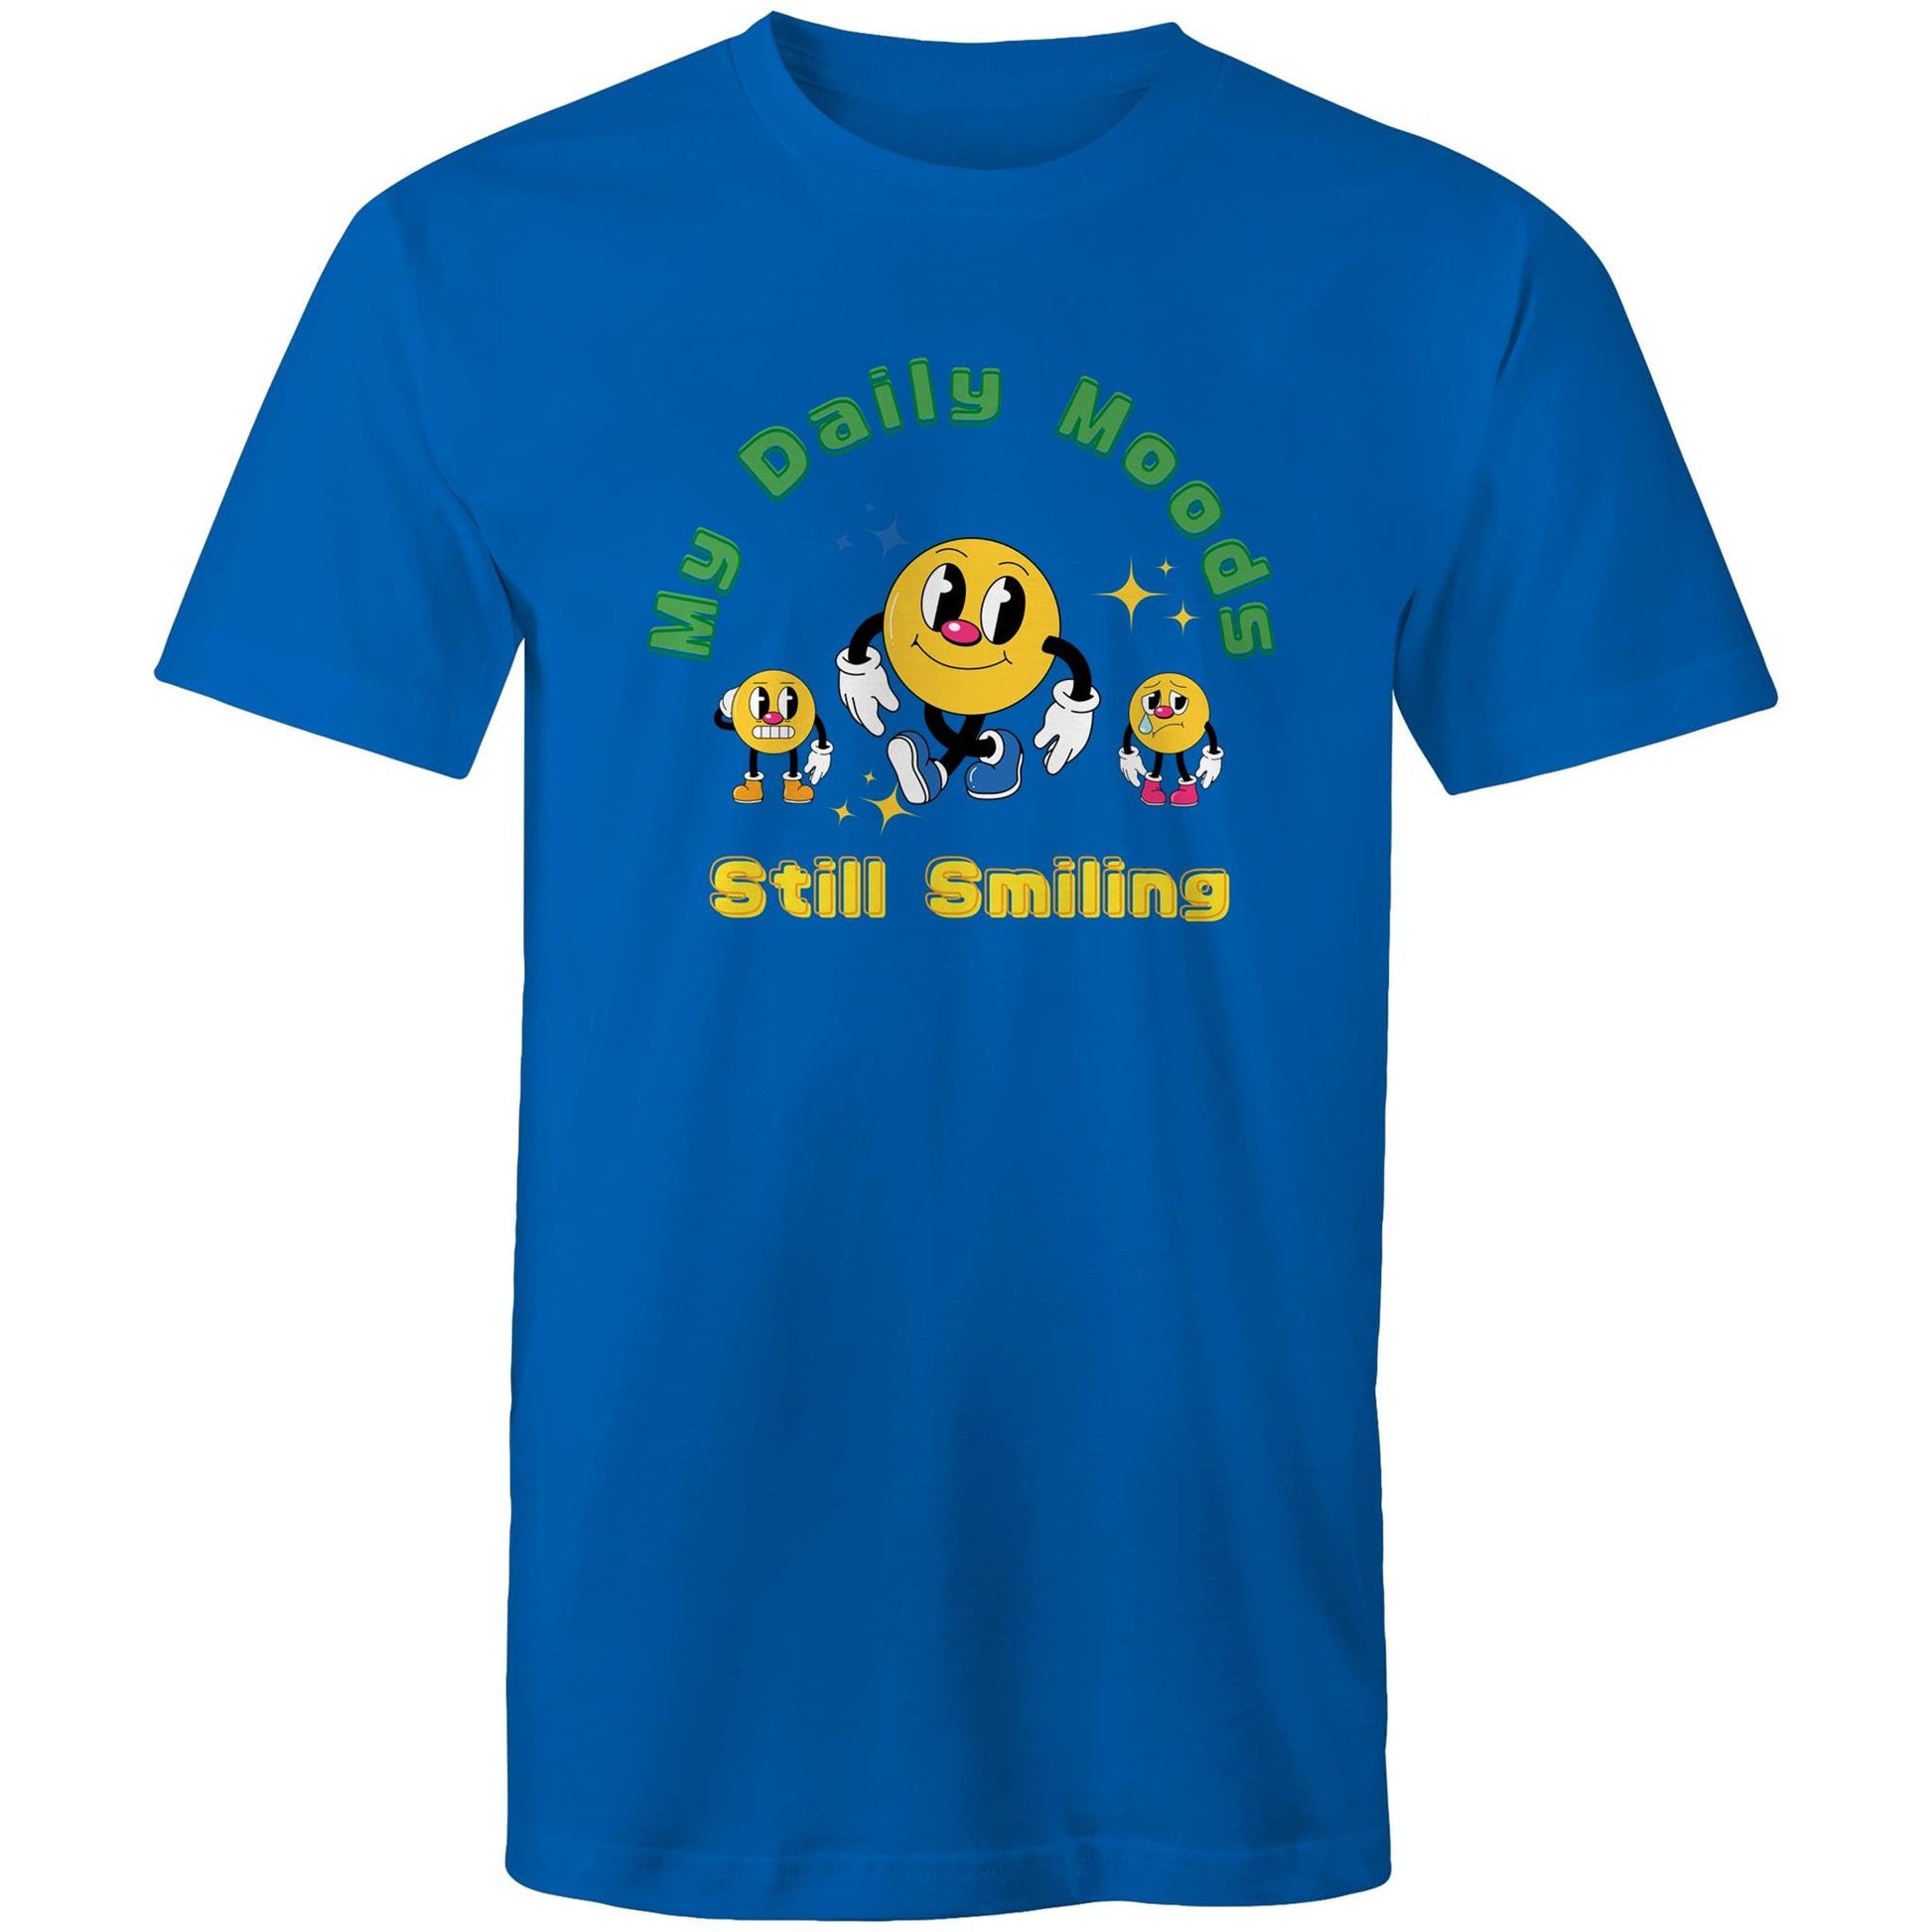 My Daily Moods - Mens T-Shirt Bright Royal Mens T-shirt